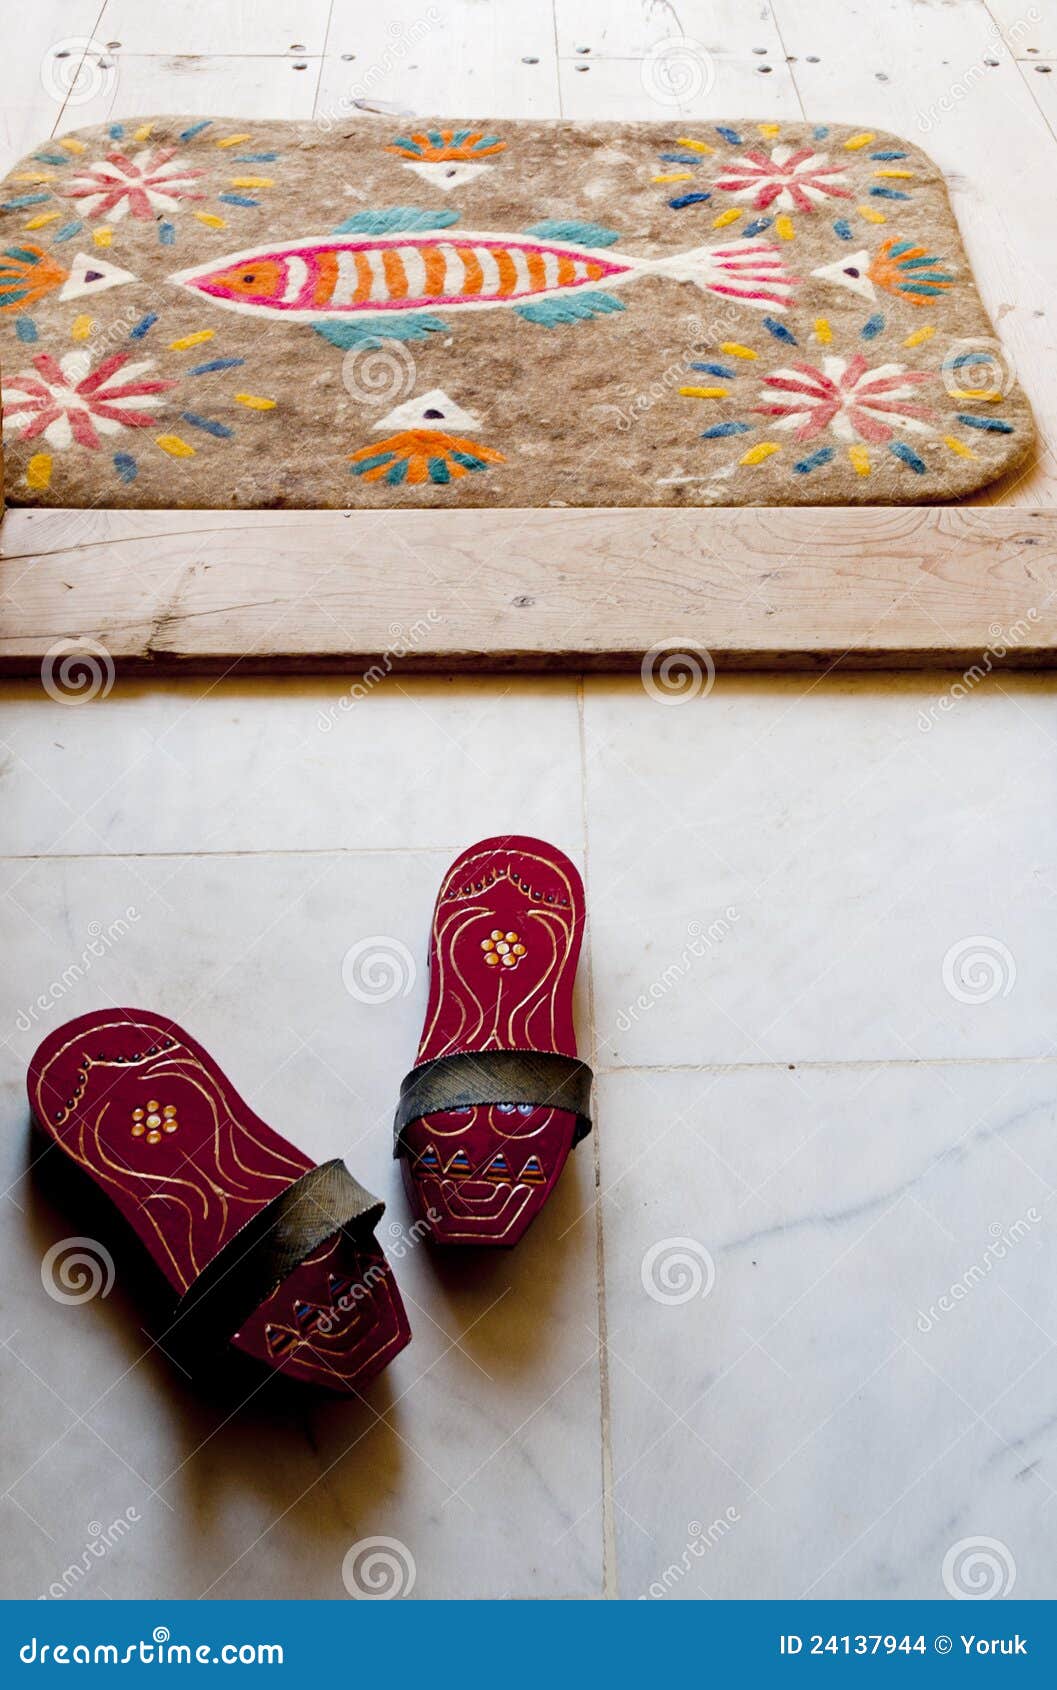 bath clogs and felt doormat at a turkish hamam